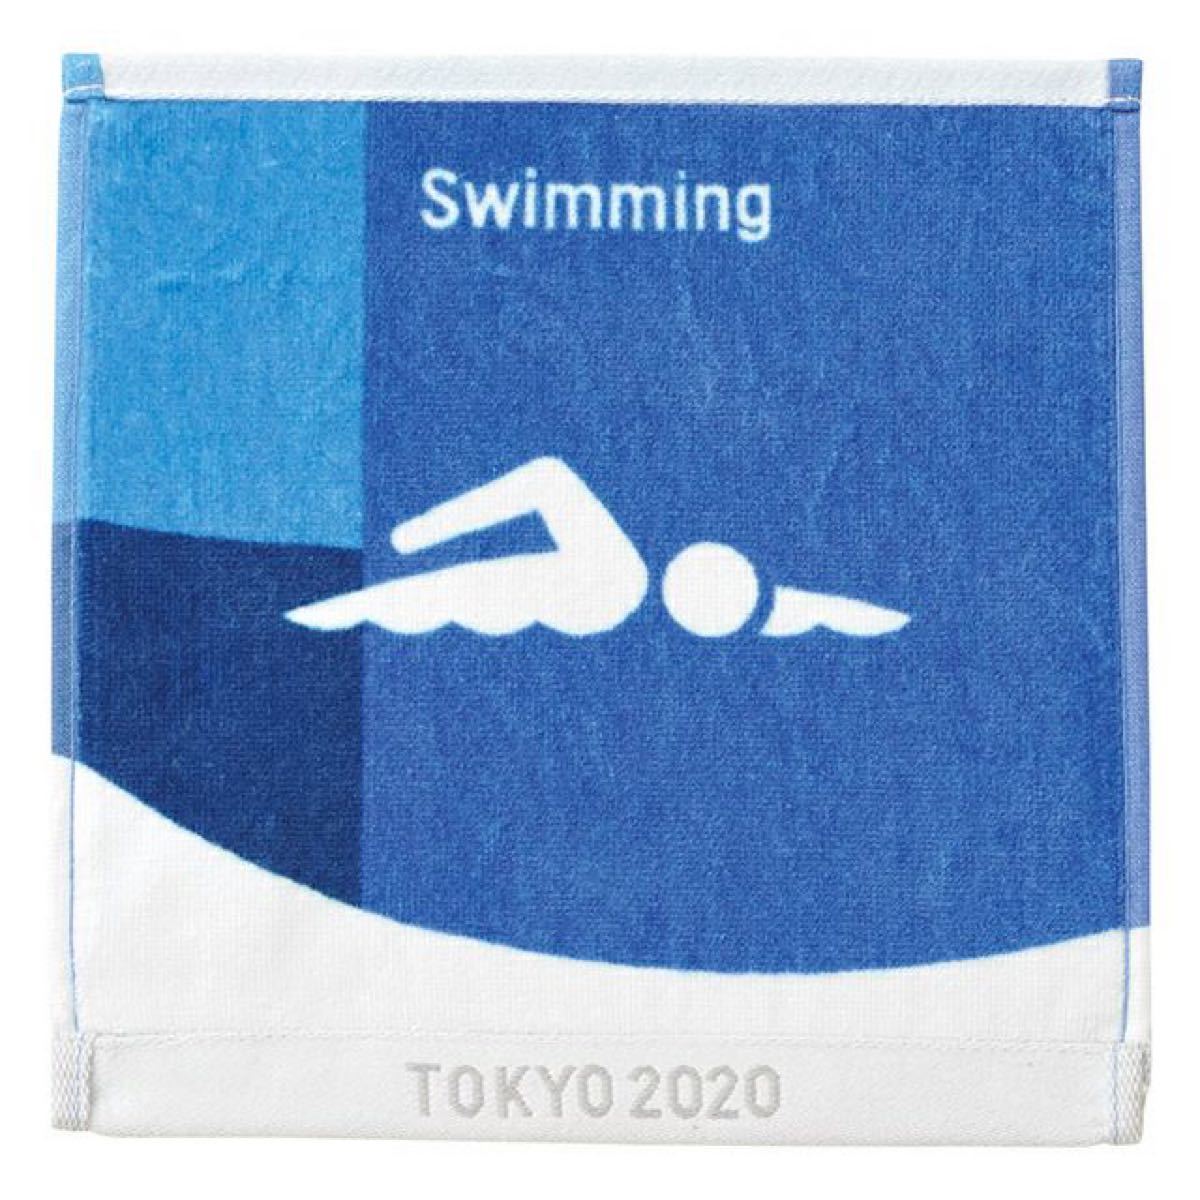 ピクトグラム柄の水泳競技ハンドタオル★東京オリンピック公式ライセンス